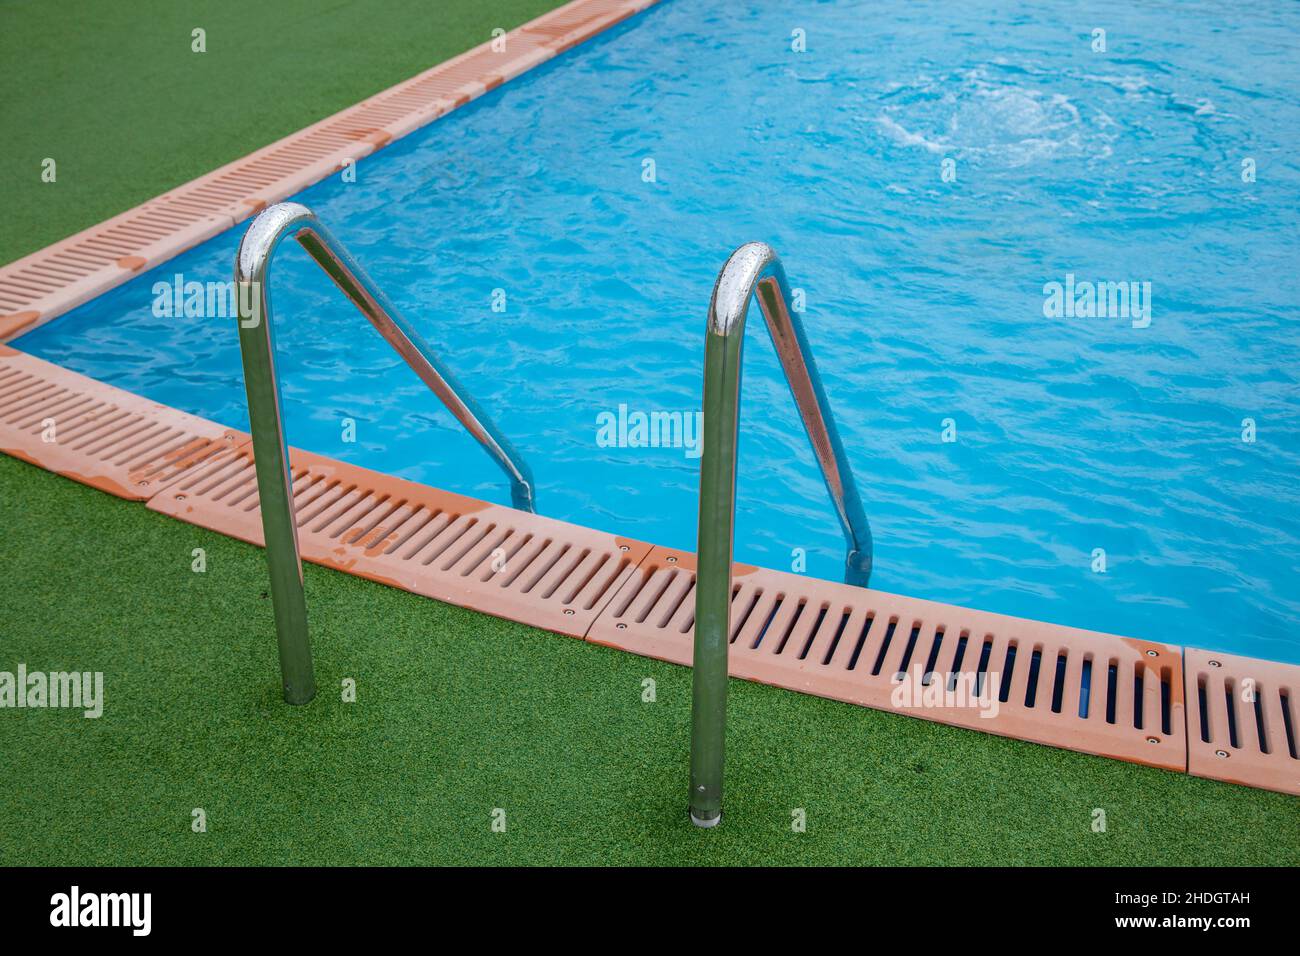 piscine, bord de piscine, piscine, bords de piscine Banque D'Images